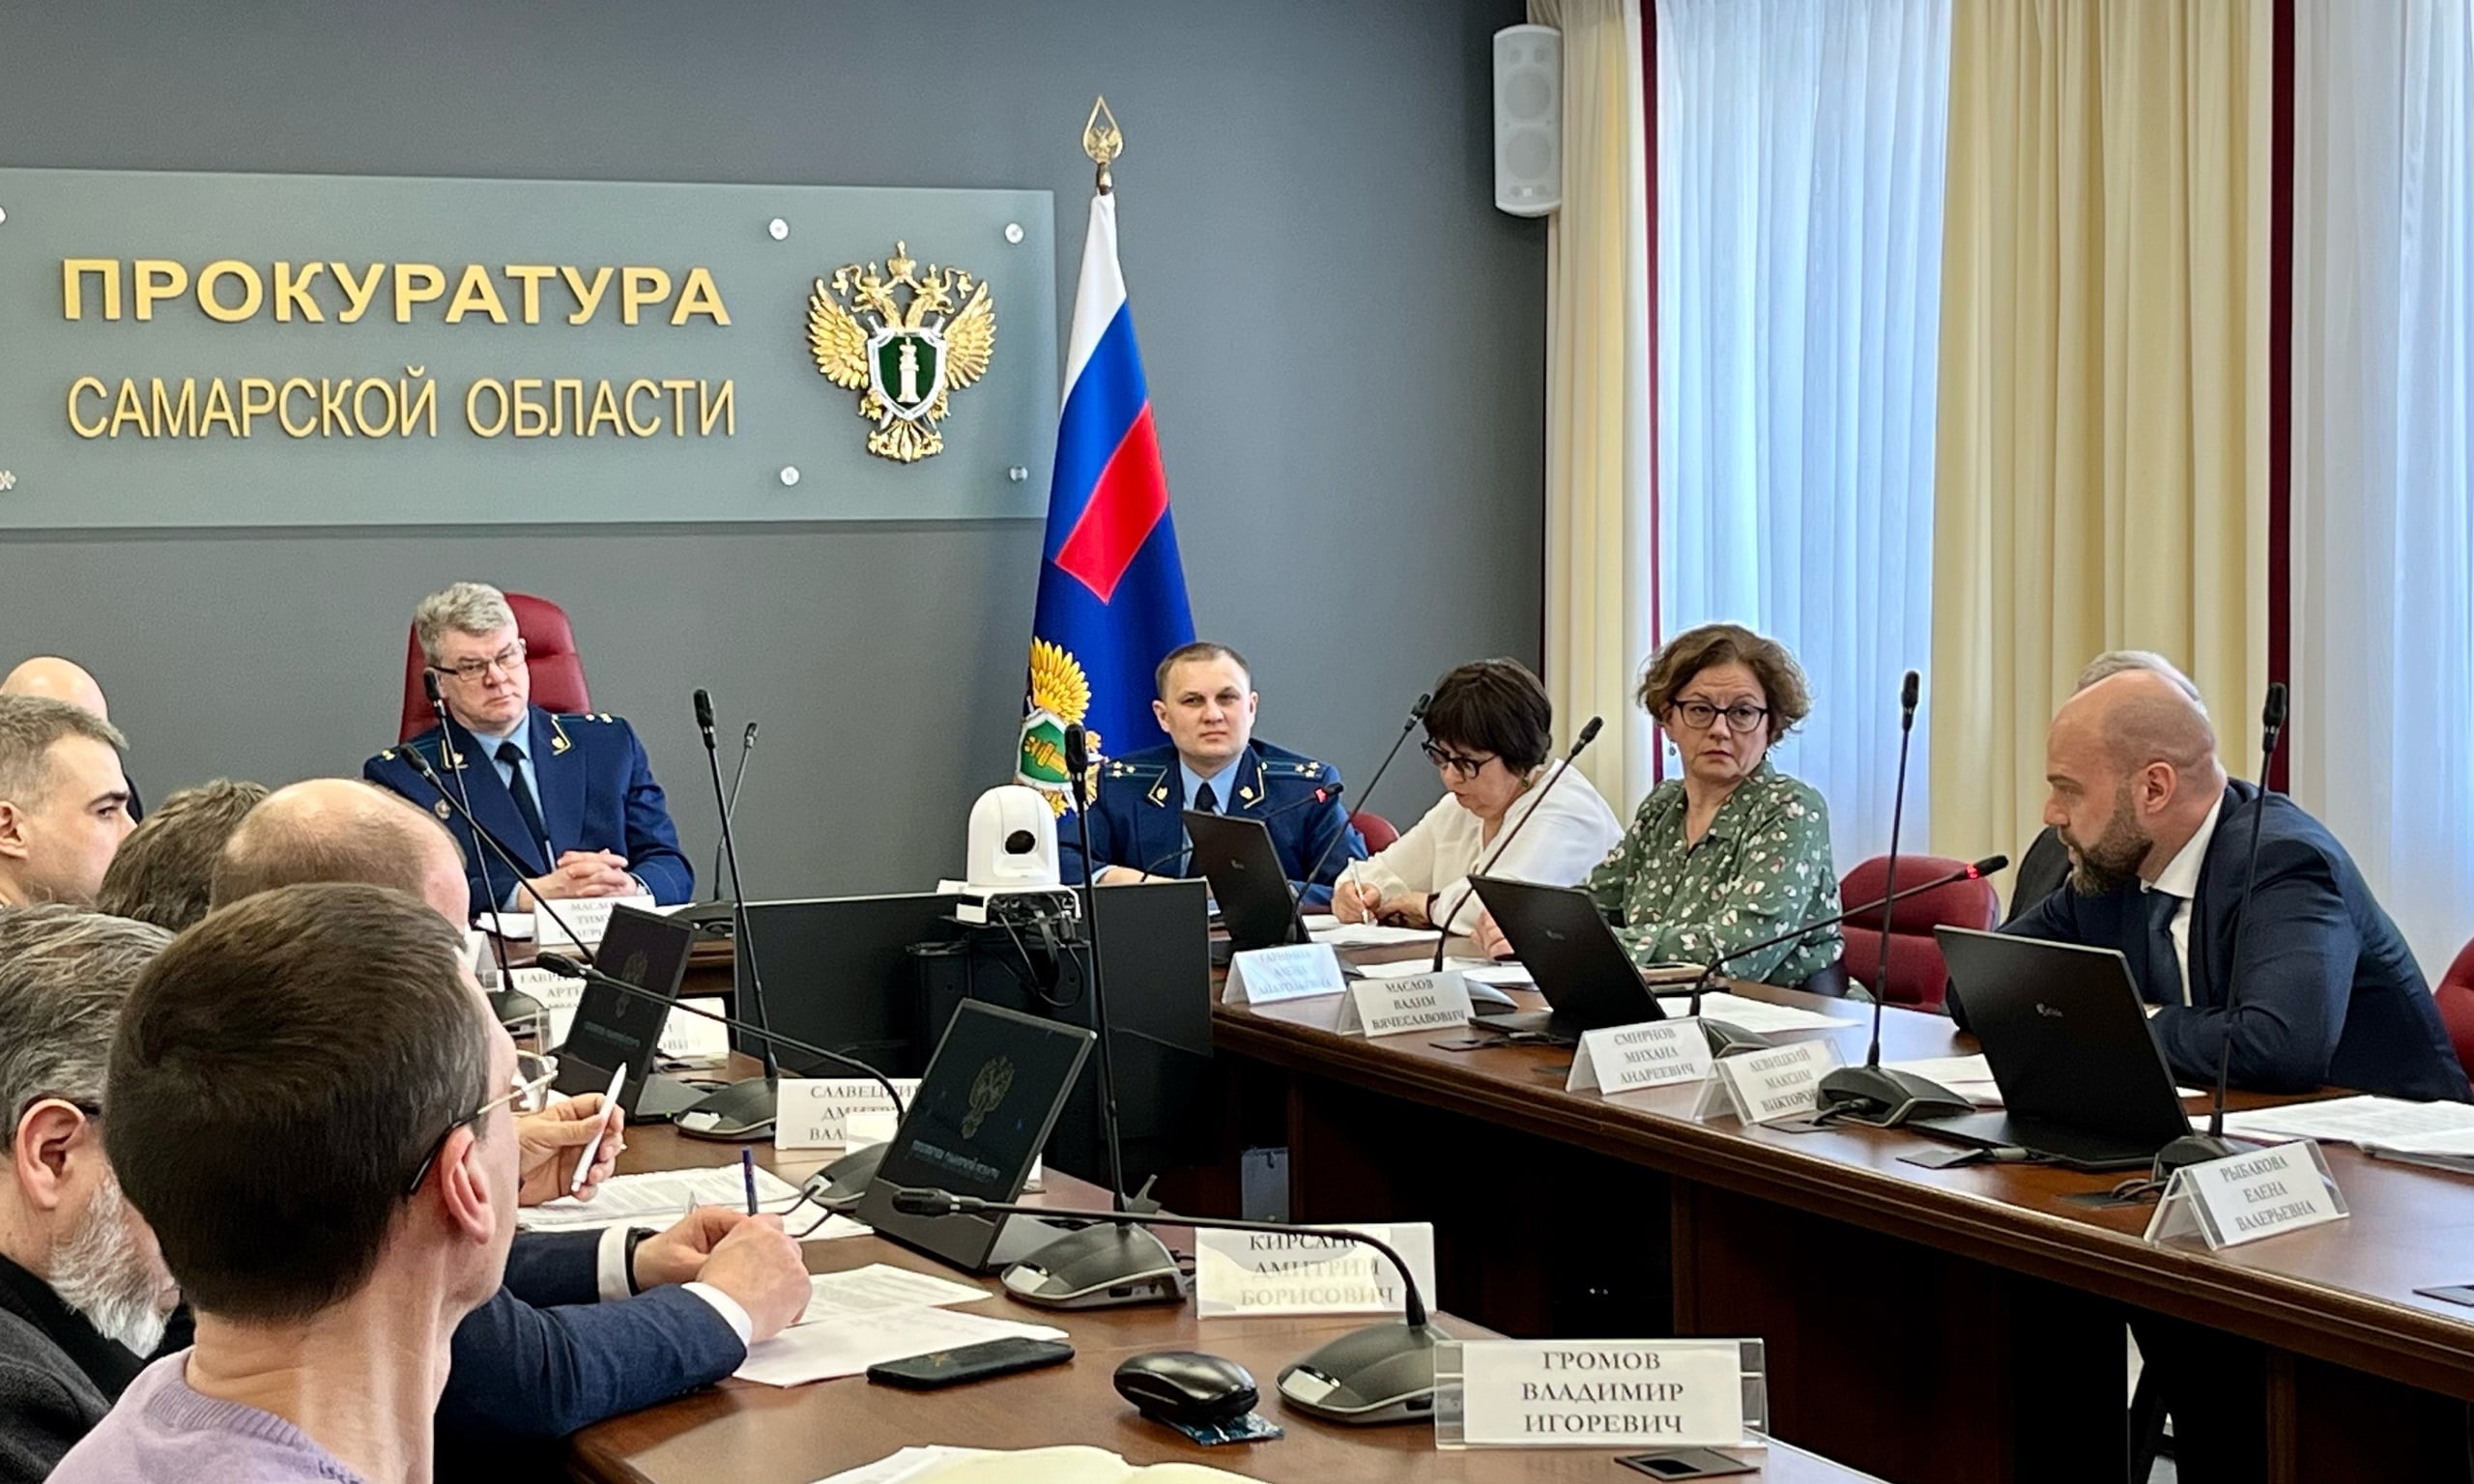 Михаил Смирнов принял участие в заседании круглого стола в прокуратуре Самарской области